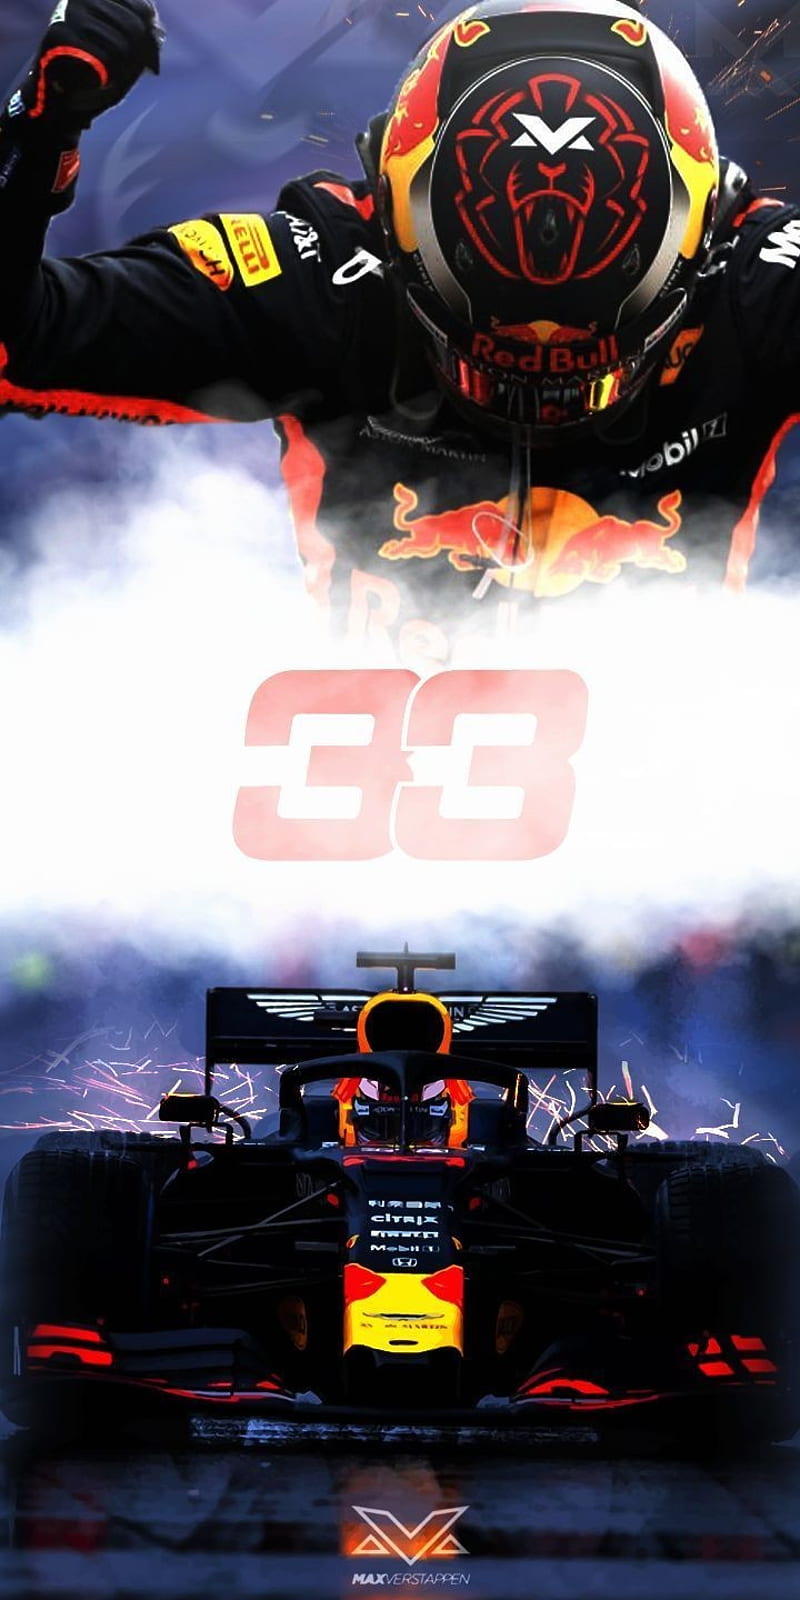 100+] Hamilton F1 Wallpapers | Wallpapers.com